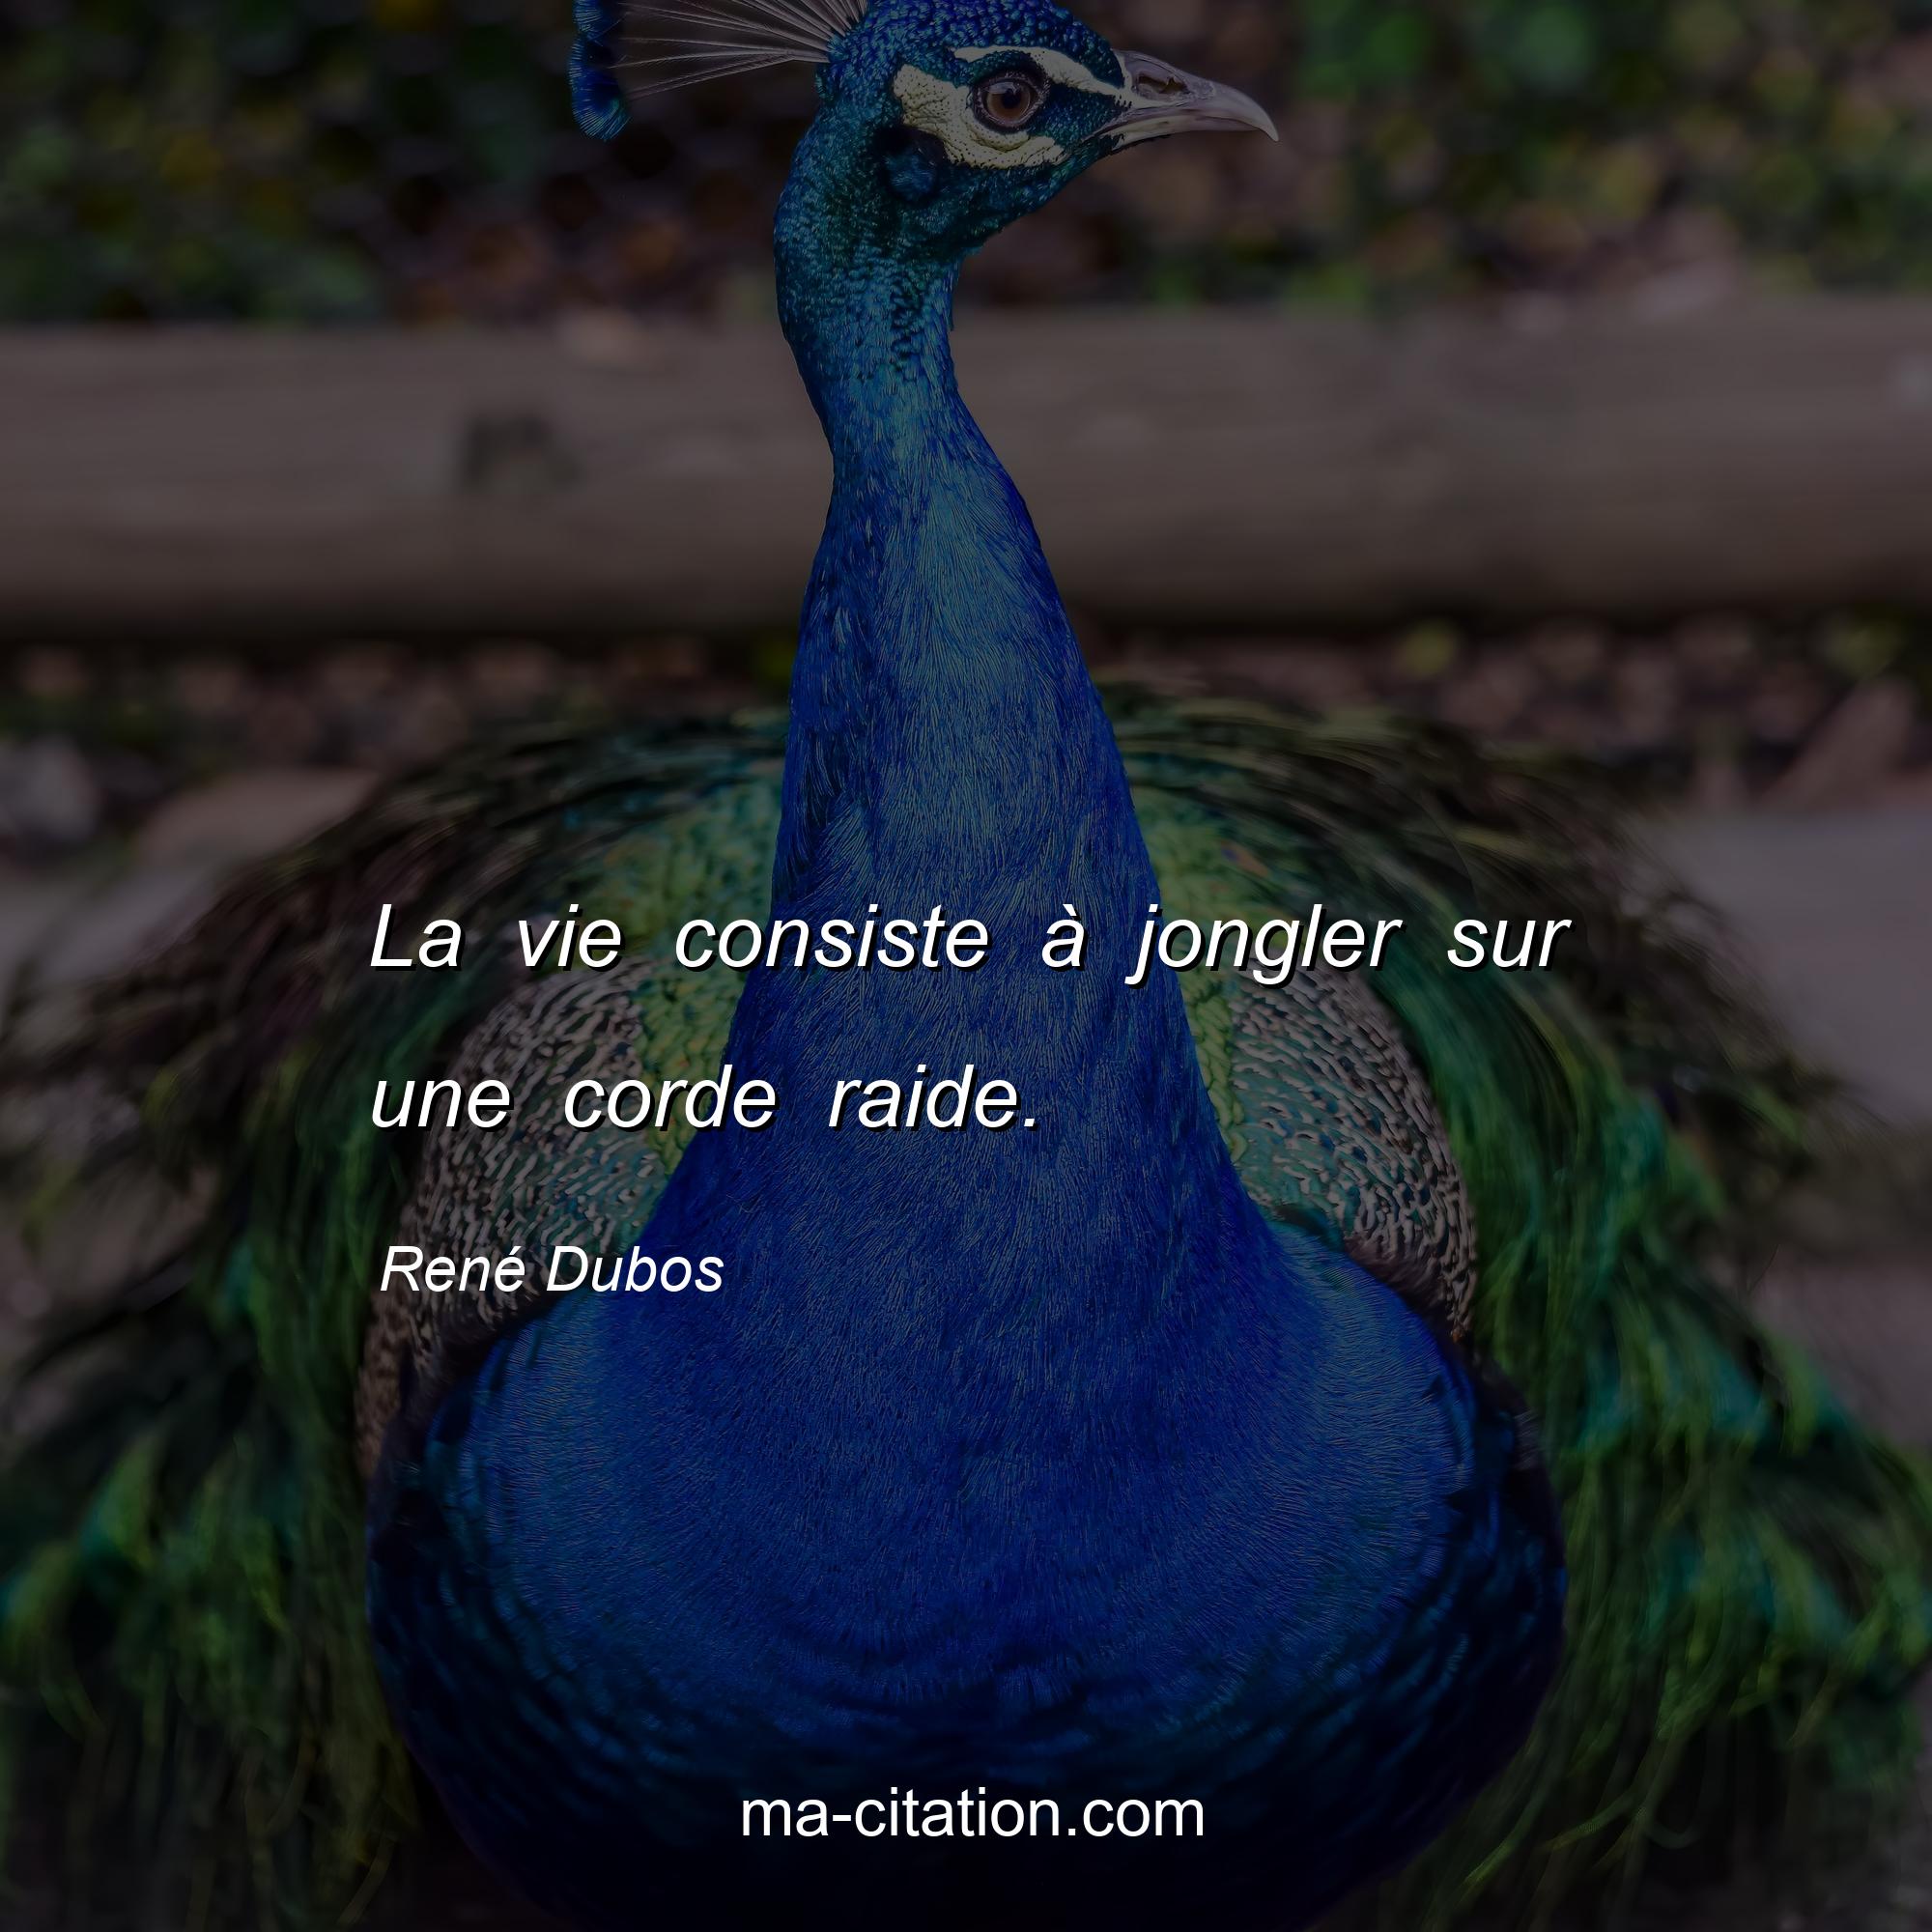 René Dubos : La vie consiste à jongler sur une corde raide.